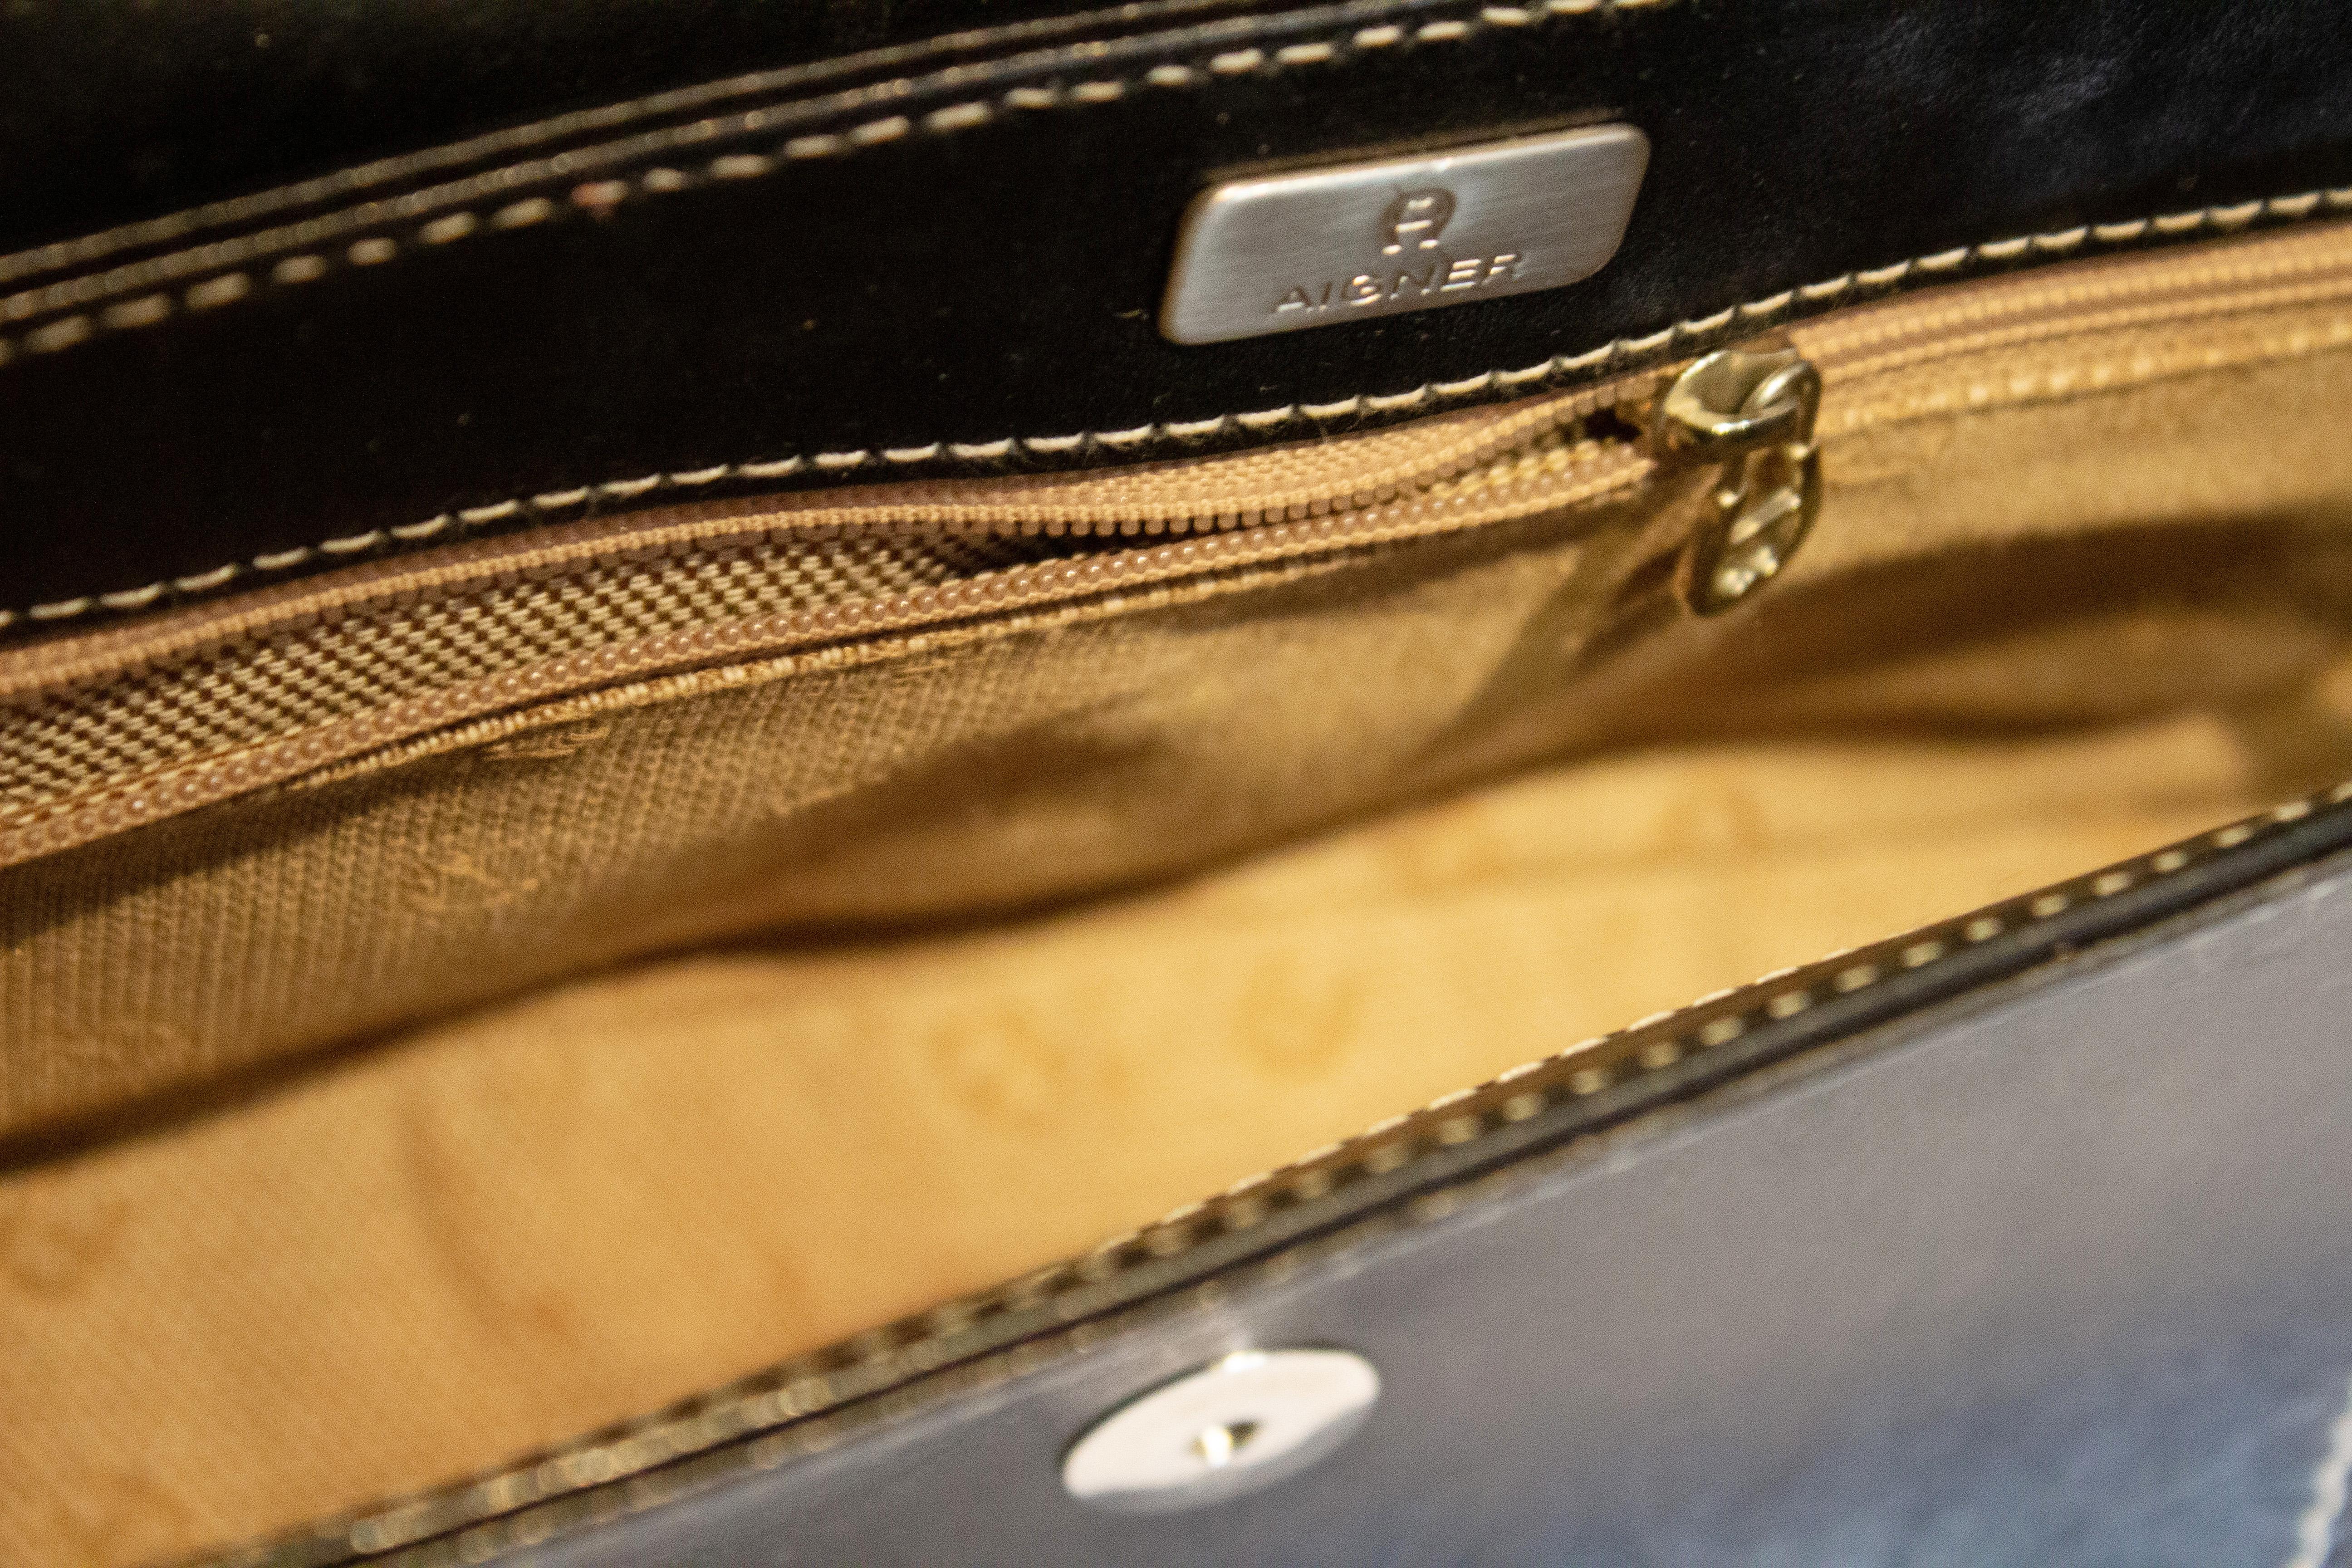 Un sac chic en cuir noir signé Etienne Aigner. Le sac est en cuir noir avec des surpiqûres blanches, possède un rabat sur le devant et une poche intérieure zippée.  
Dimensions : largeur 12'', hauteur 6'', profondeur 2 1/2''.